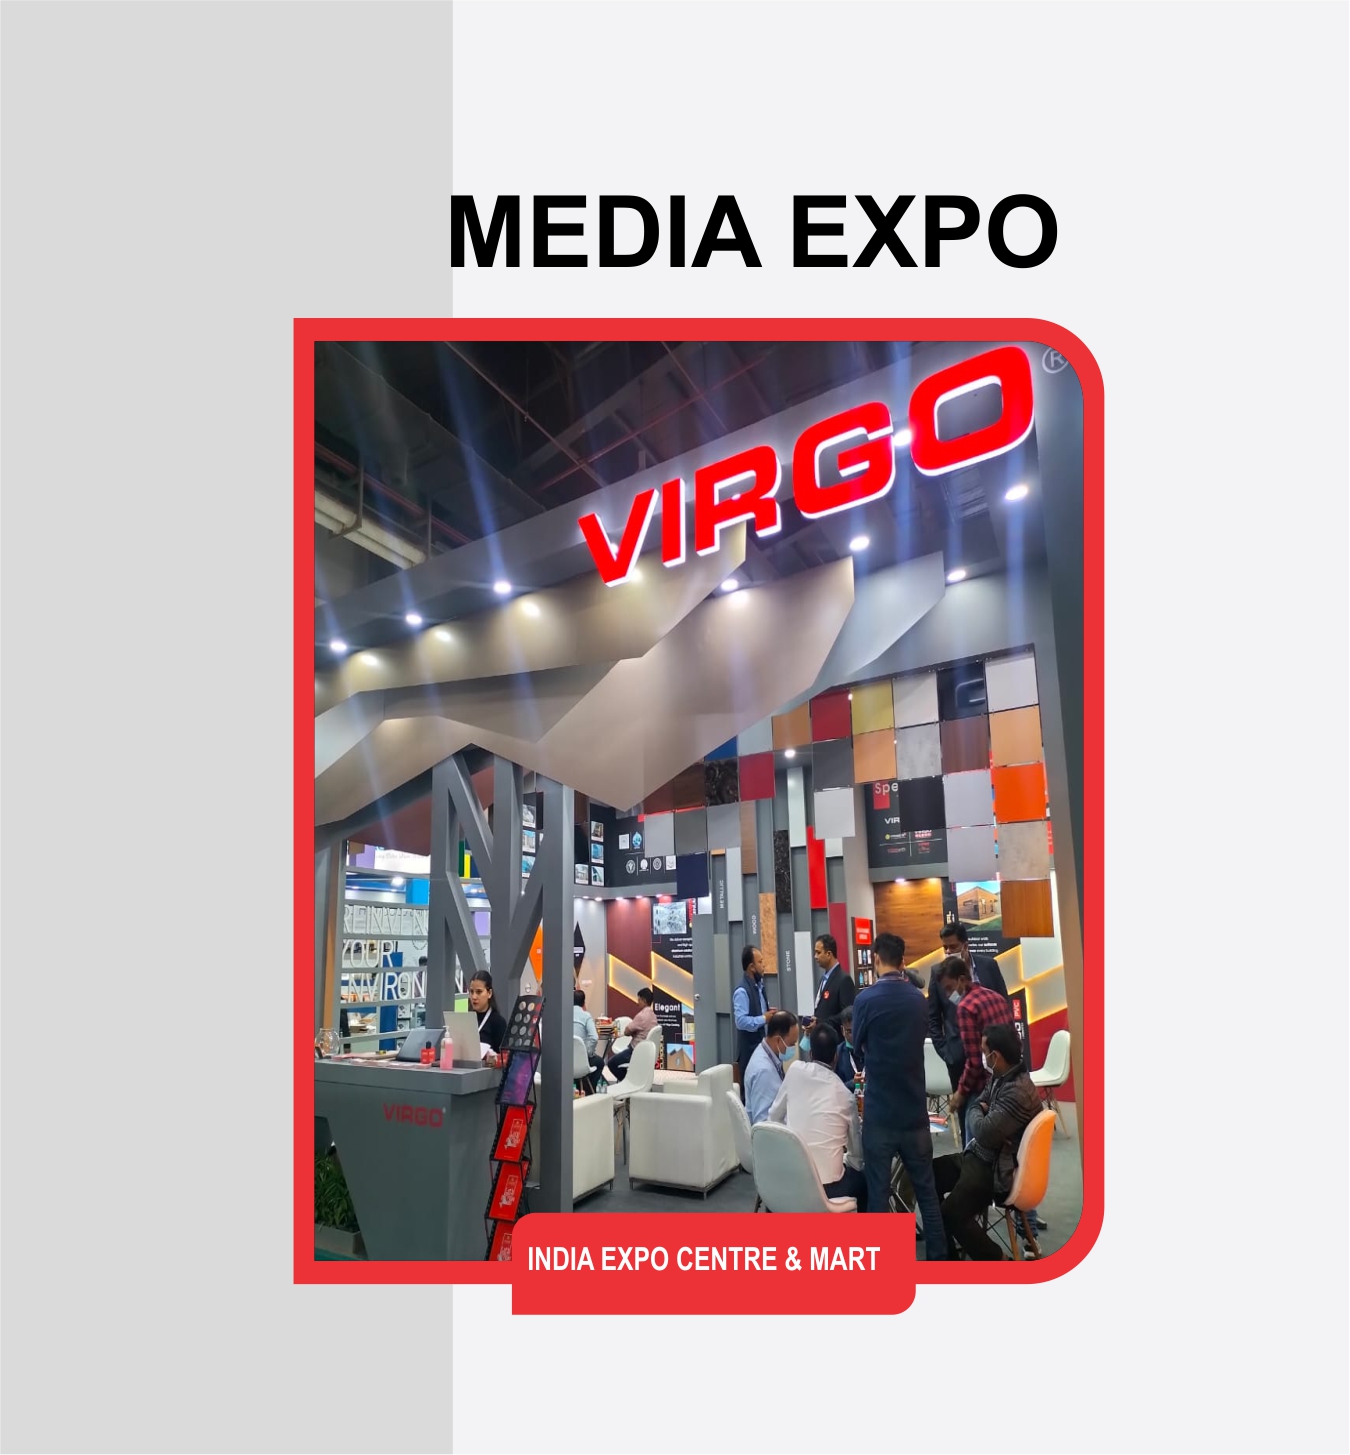 MEDIA EXPO (India Expo Centre & Mart)